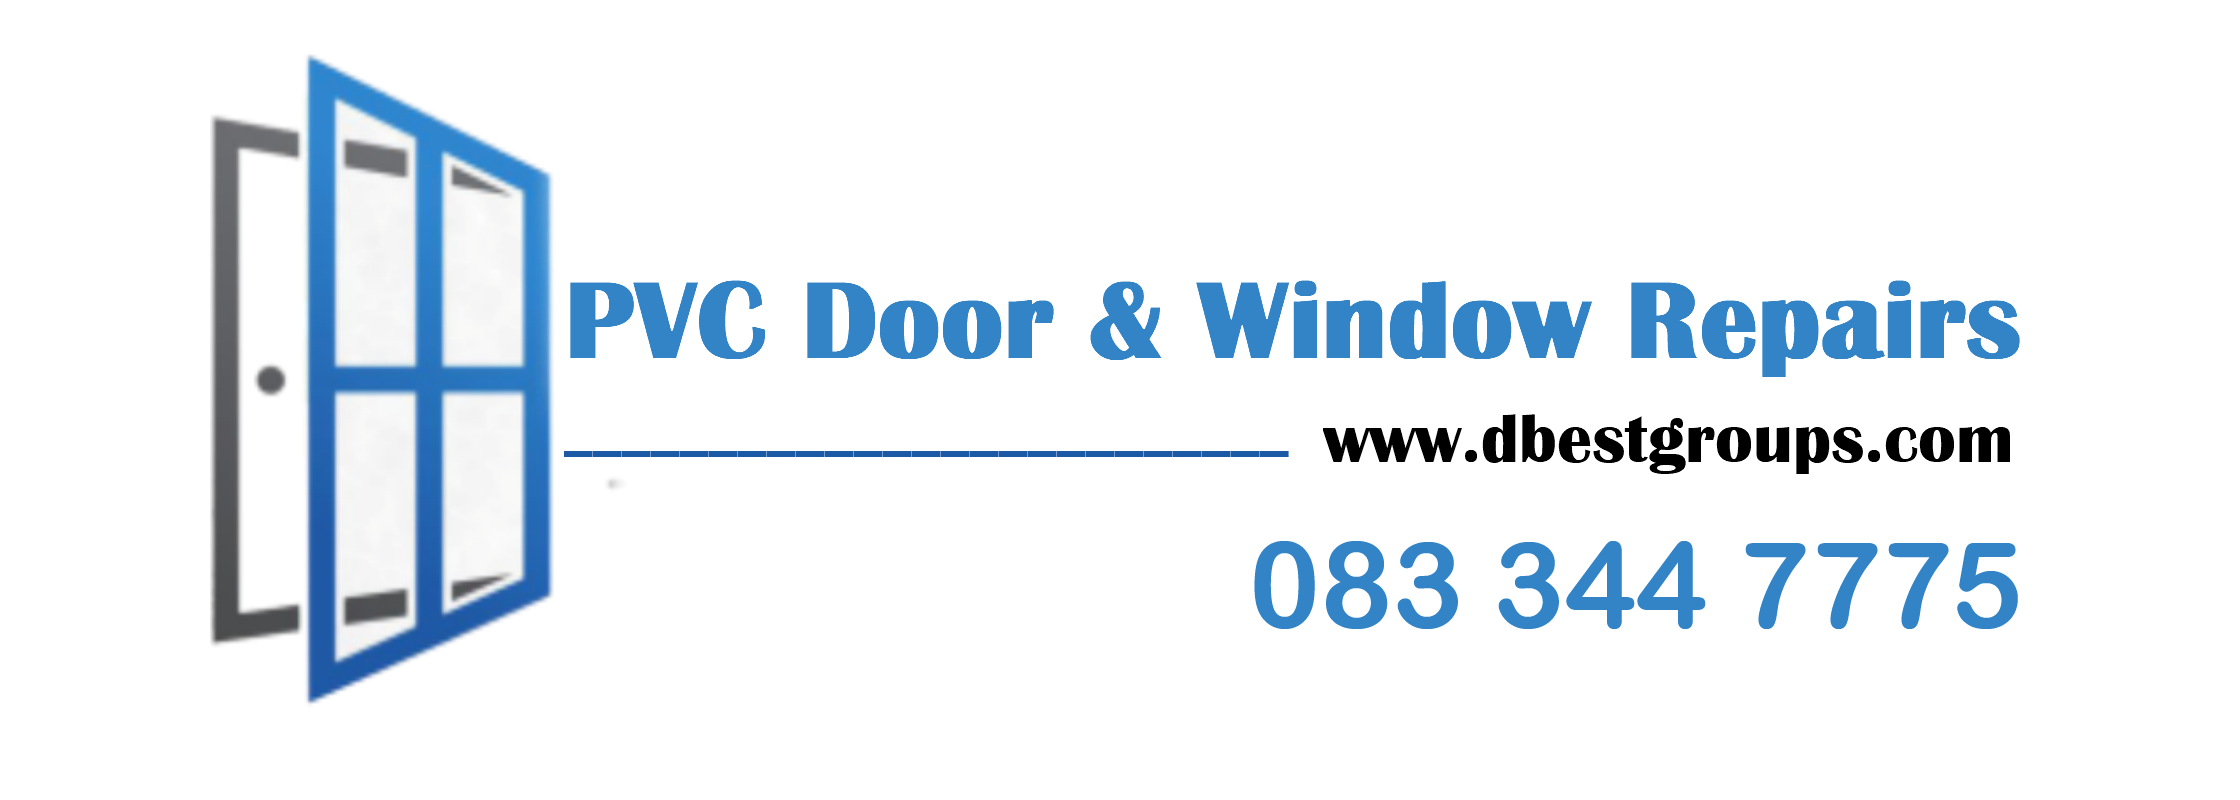 dbest-logo-pvc-door-window-repairs-logo-longford-dublin-galway